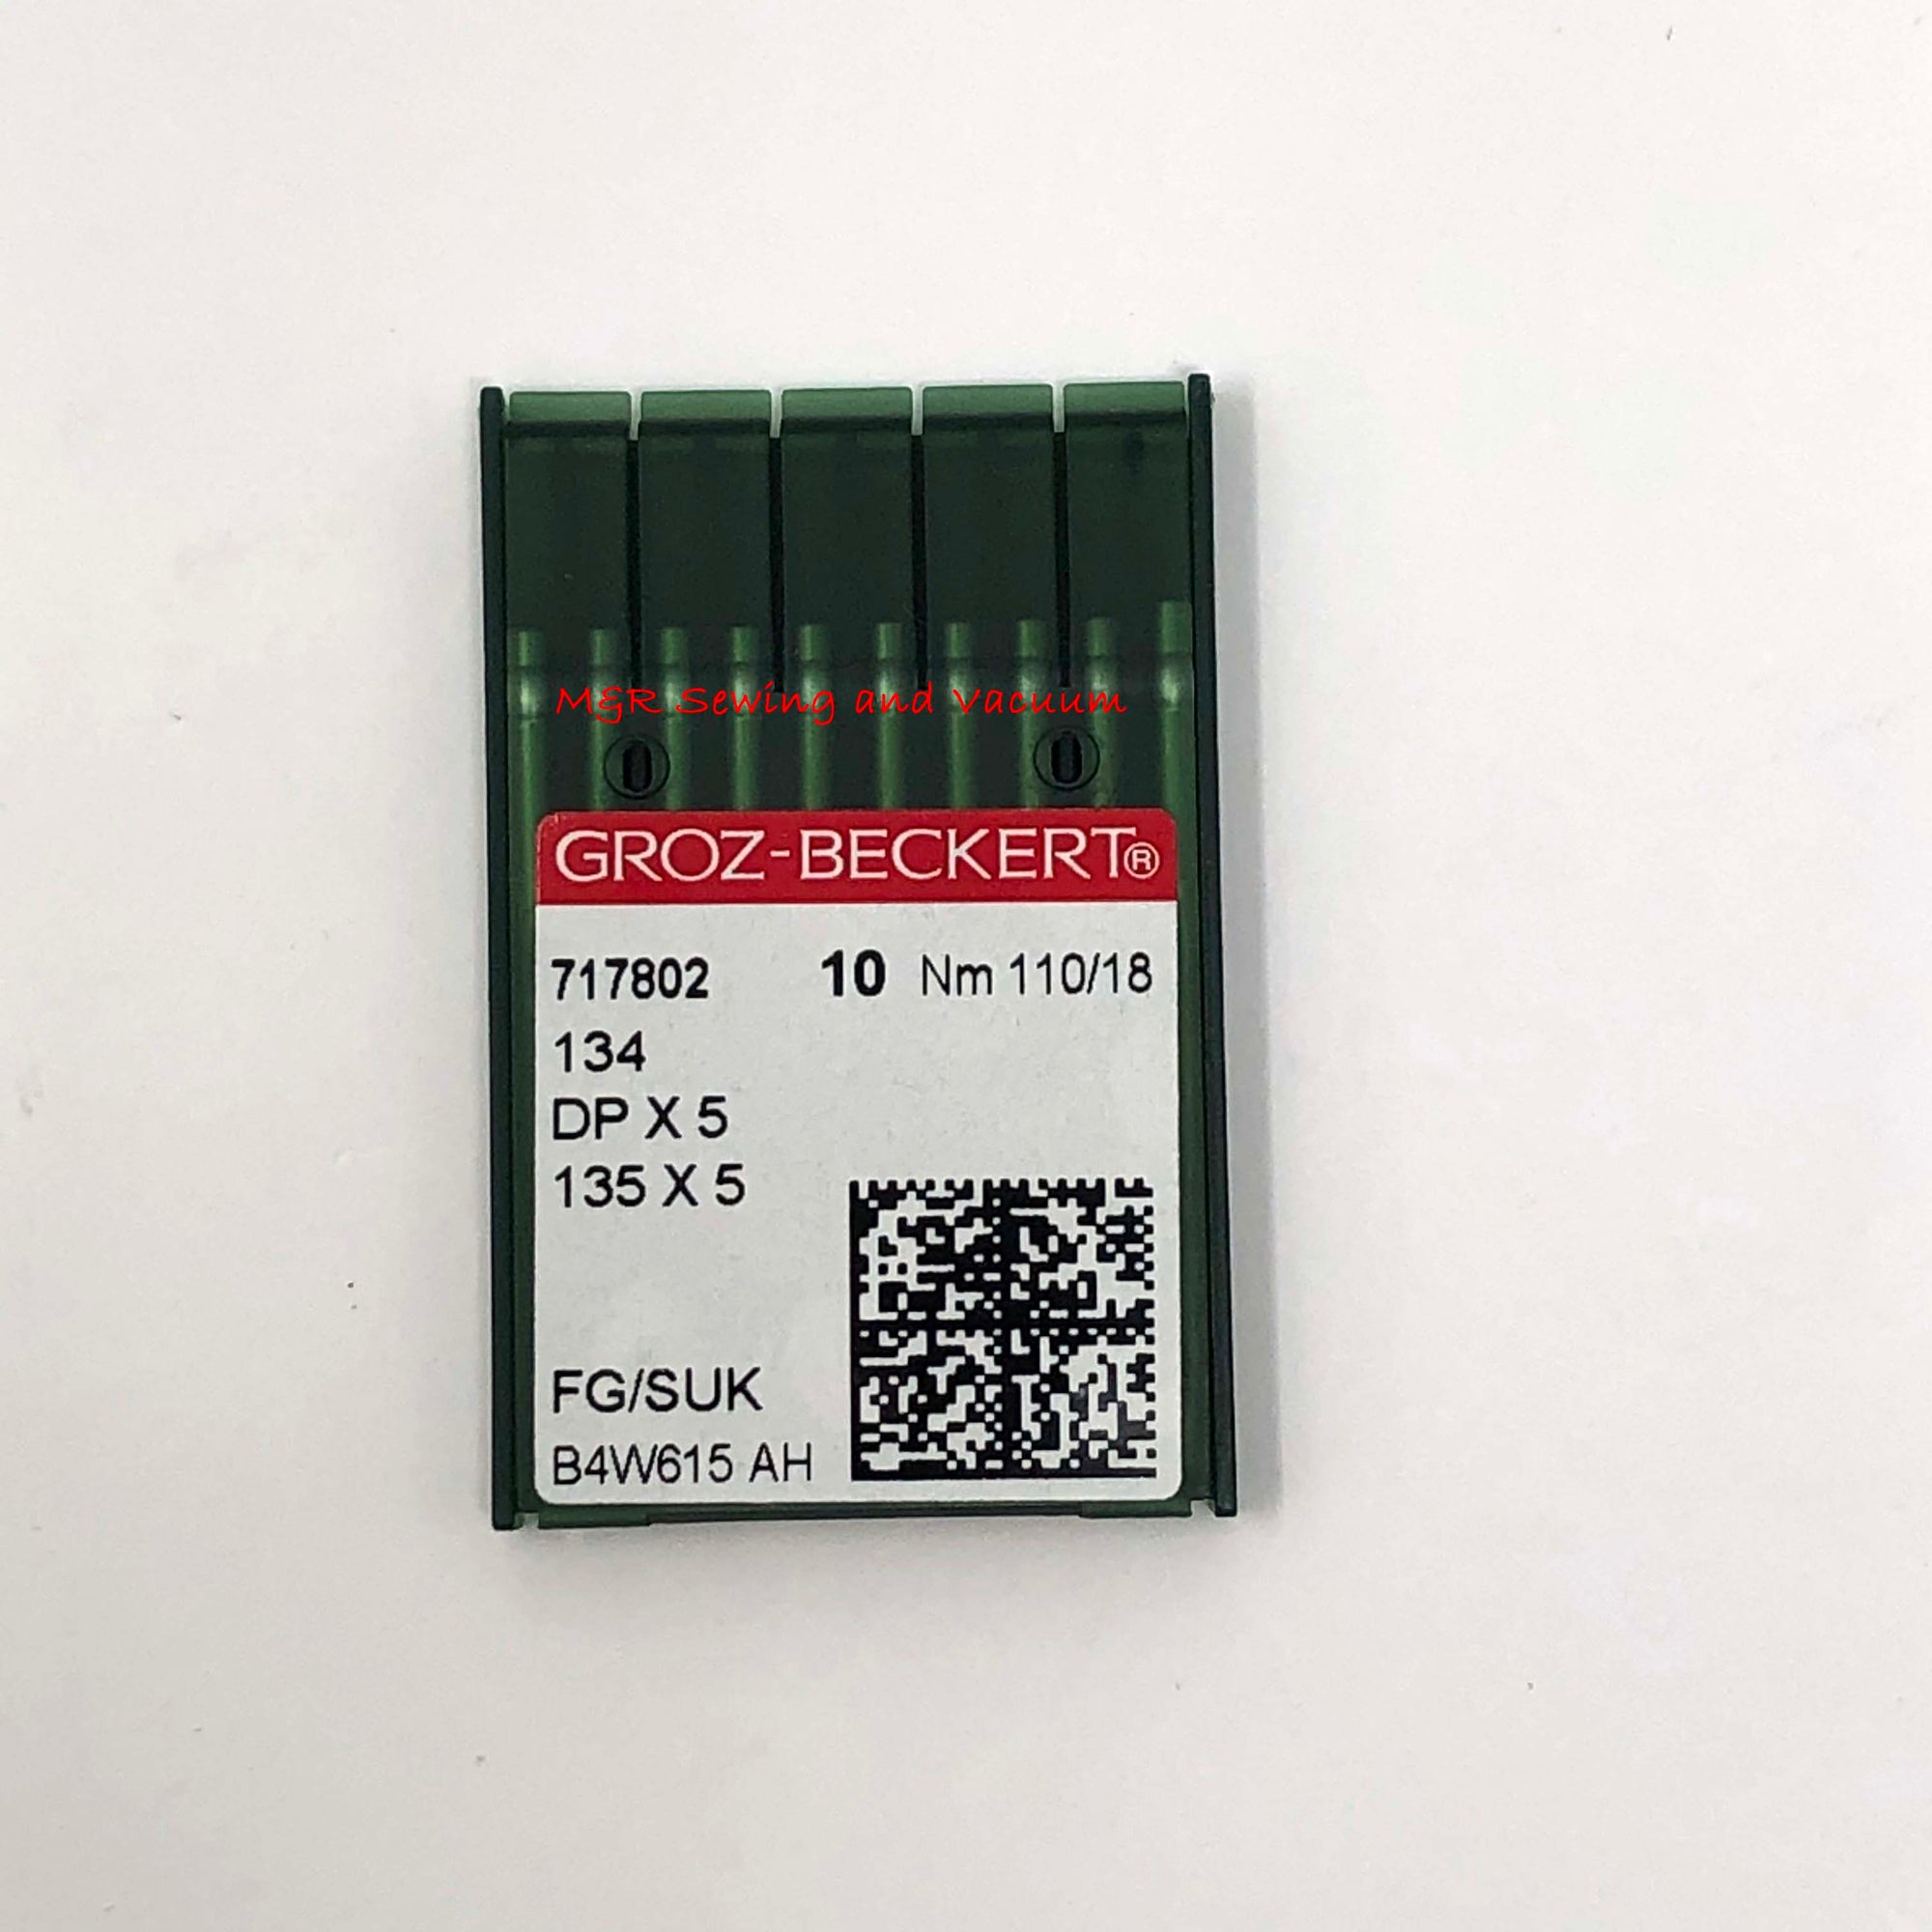 Groz-Beckert 134R (DPx5) Needles - 110/18